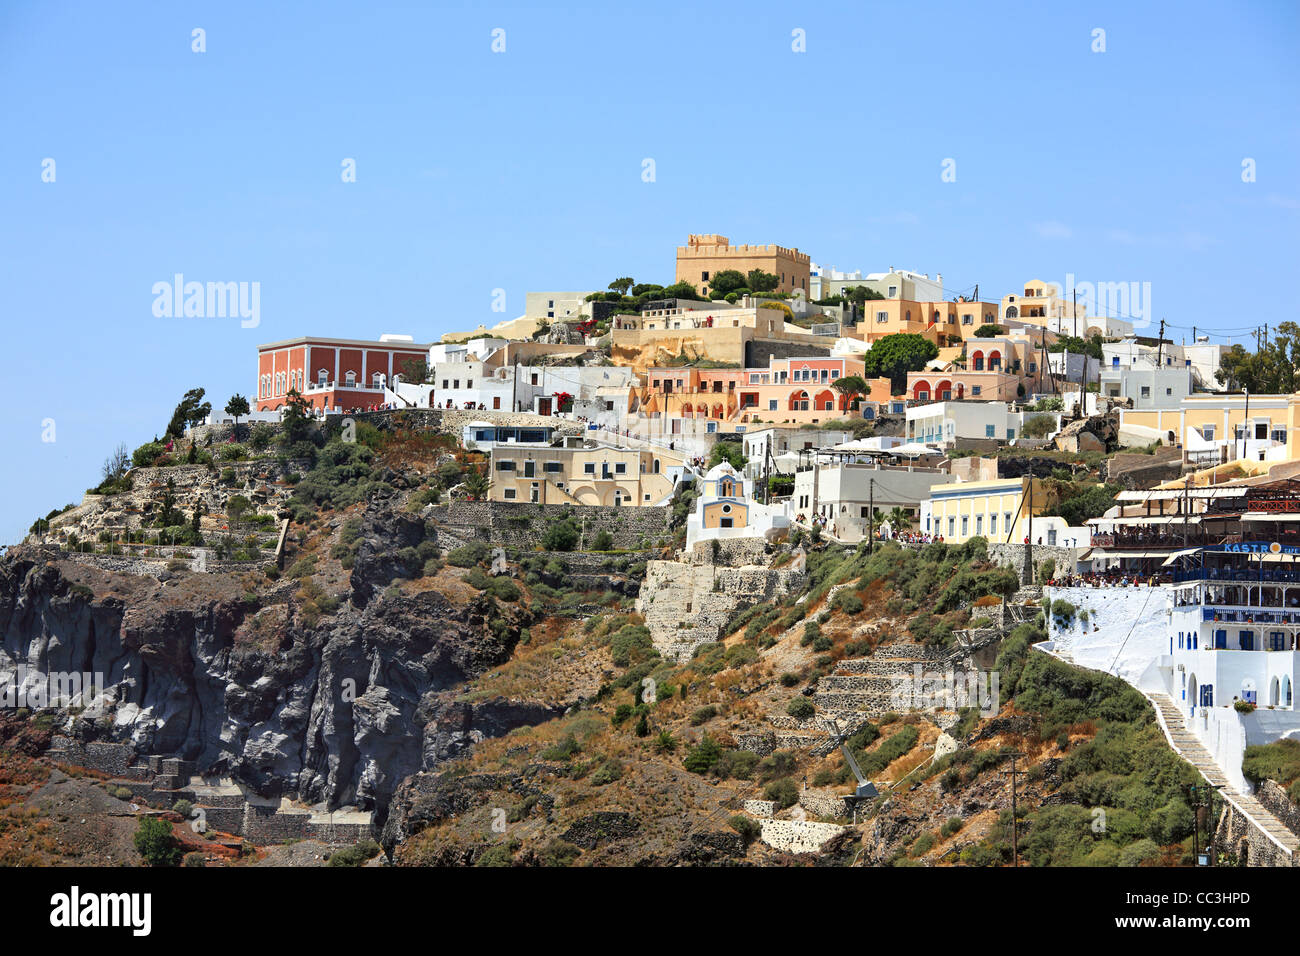 Die Klippe Stadt Fira auf der griechischen Insel Santorin in der Ägäis vor der Küste Griechenlands. Stockfoto